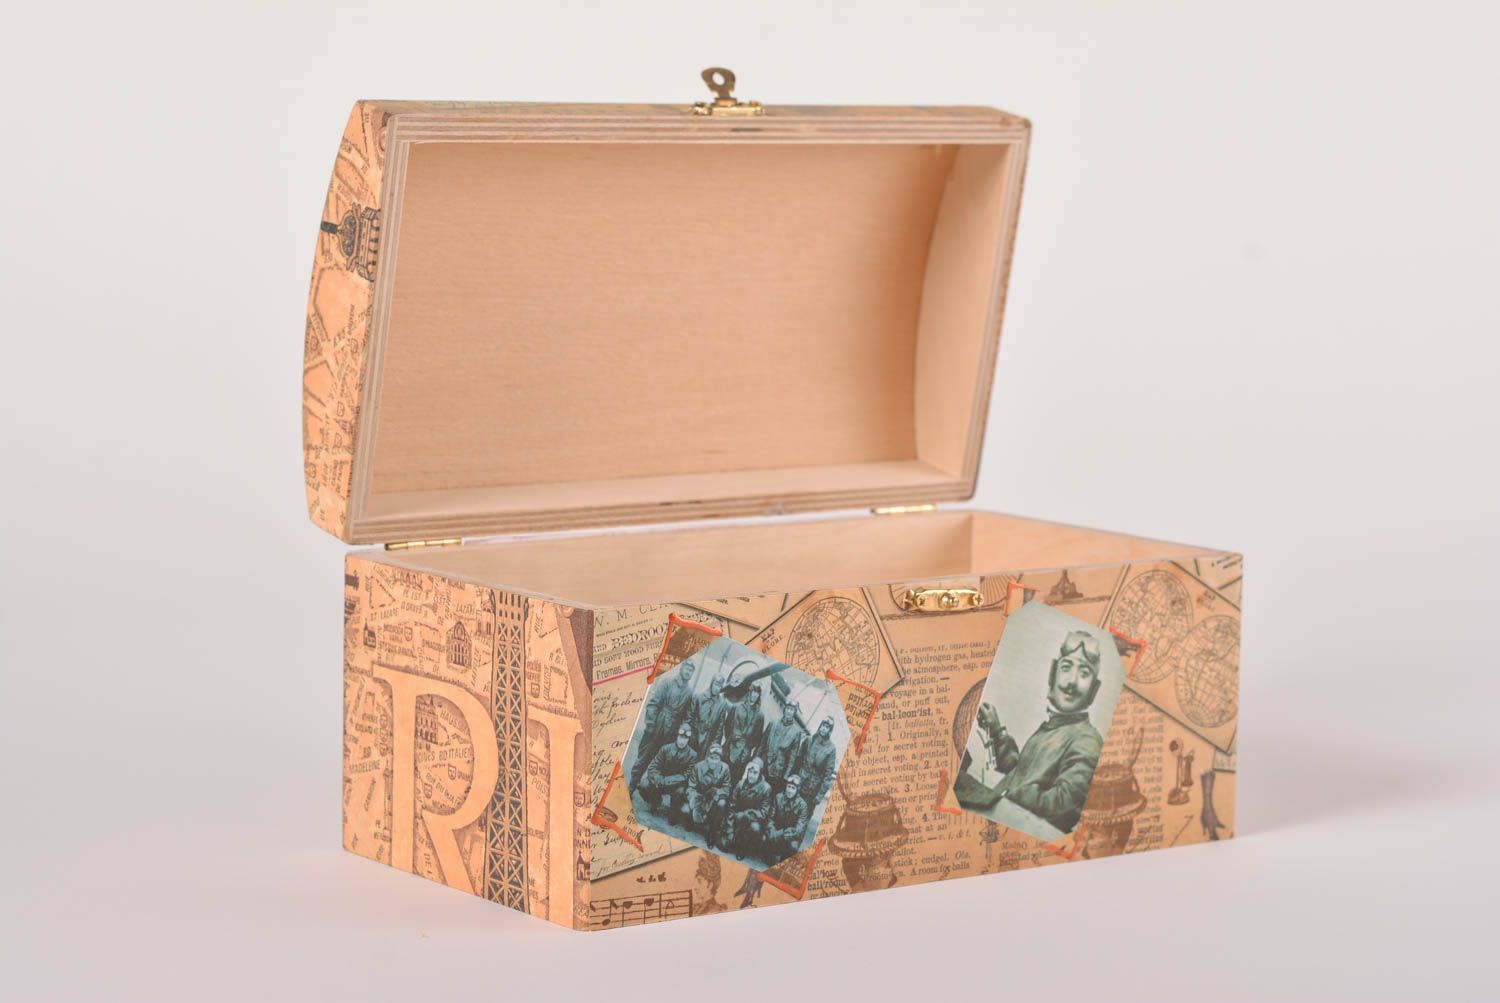 Beautiful handmade wooden box jewelry box design wood craft home goods photo 2